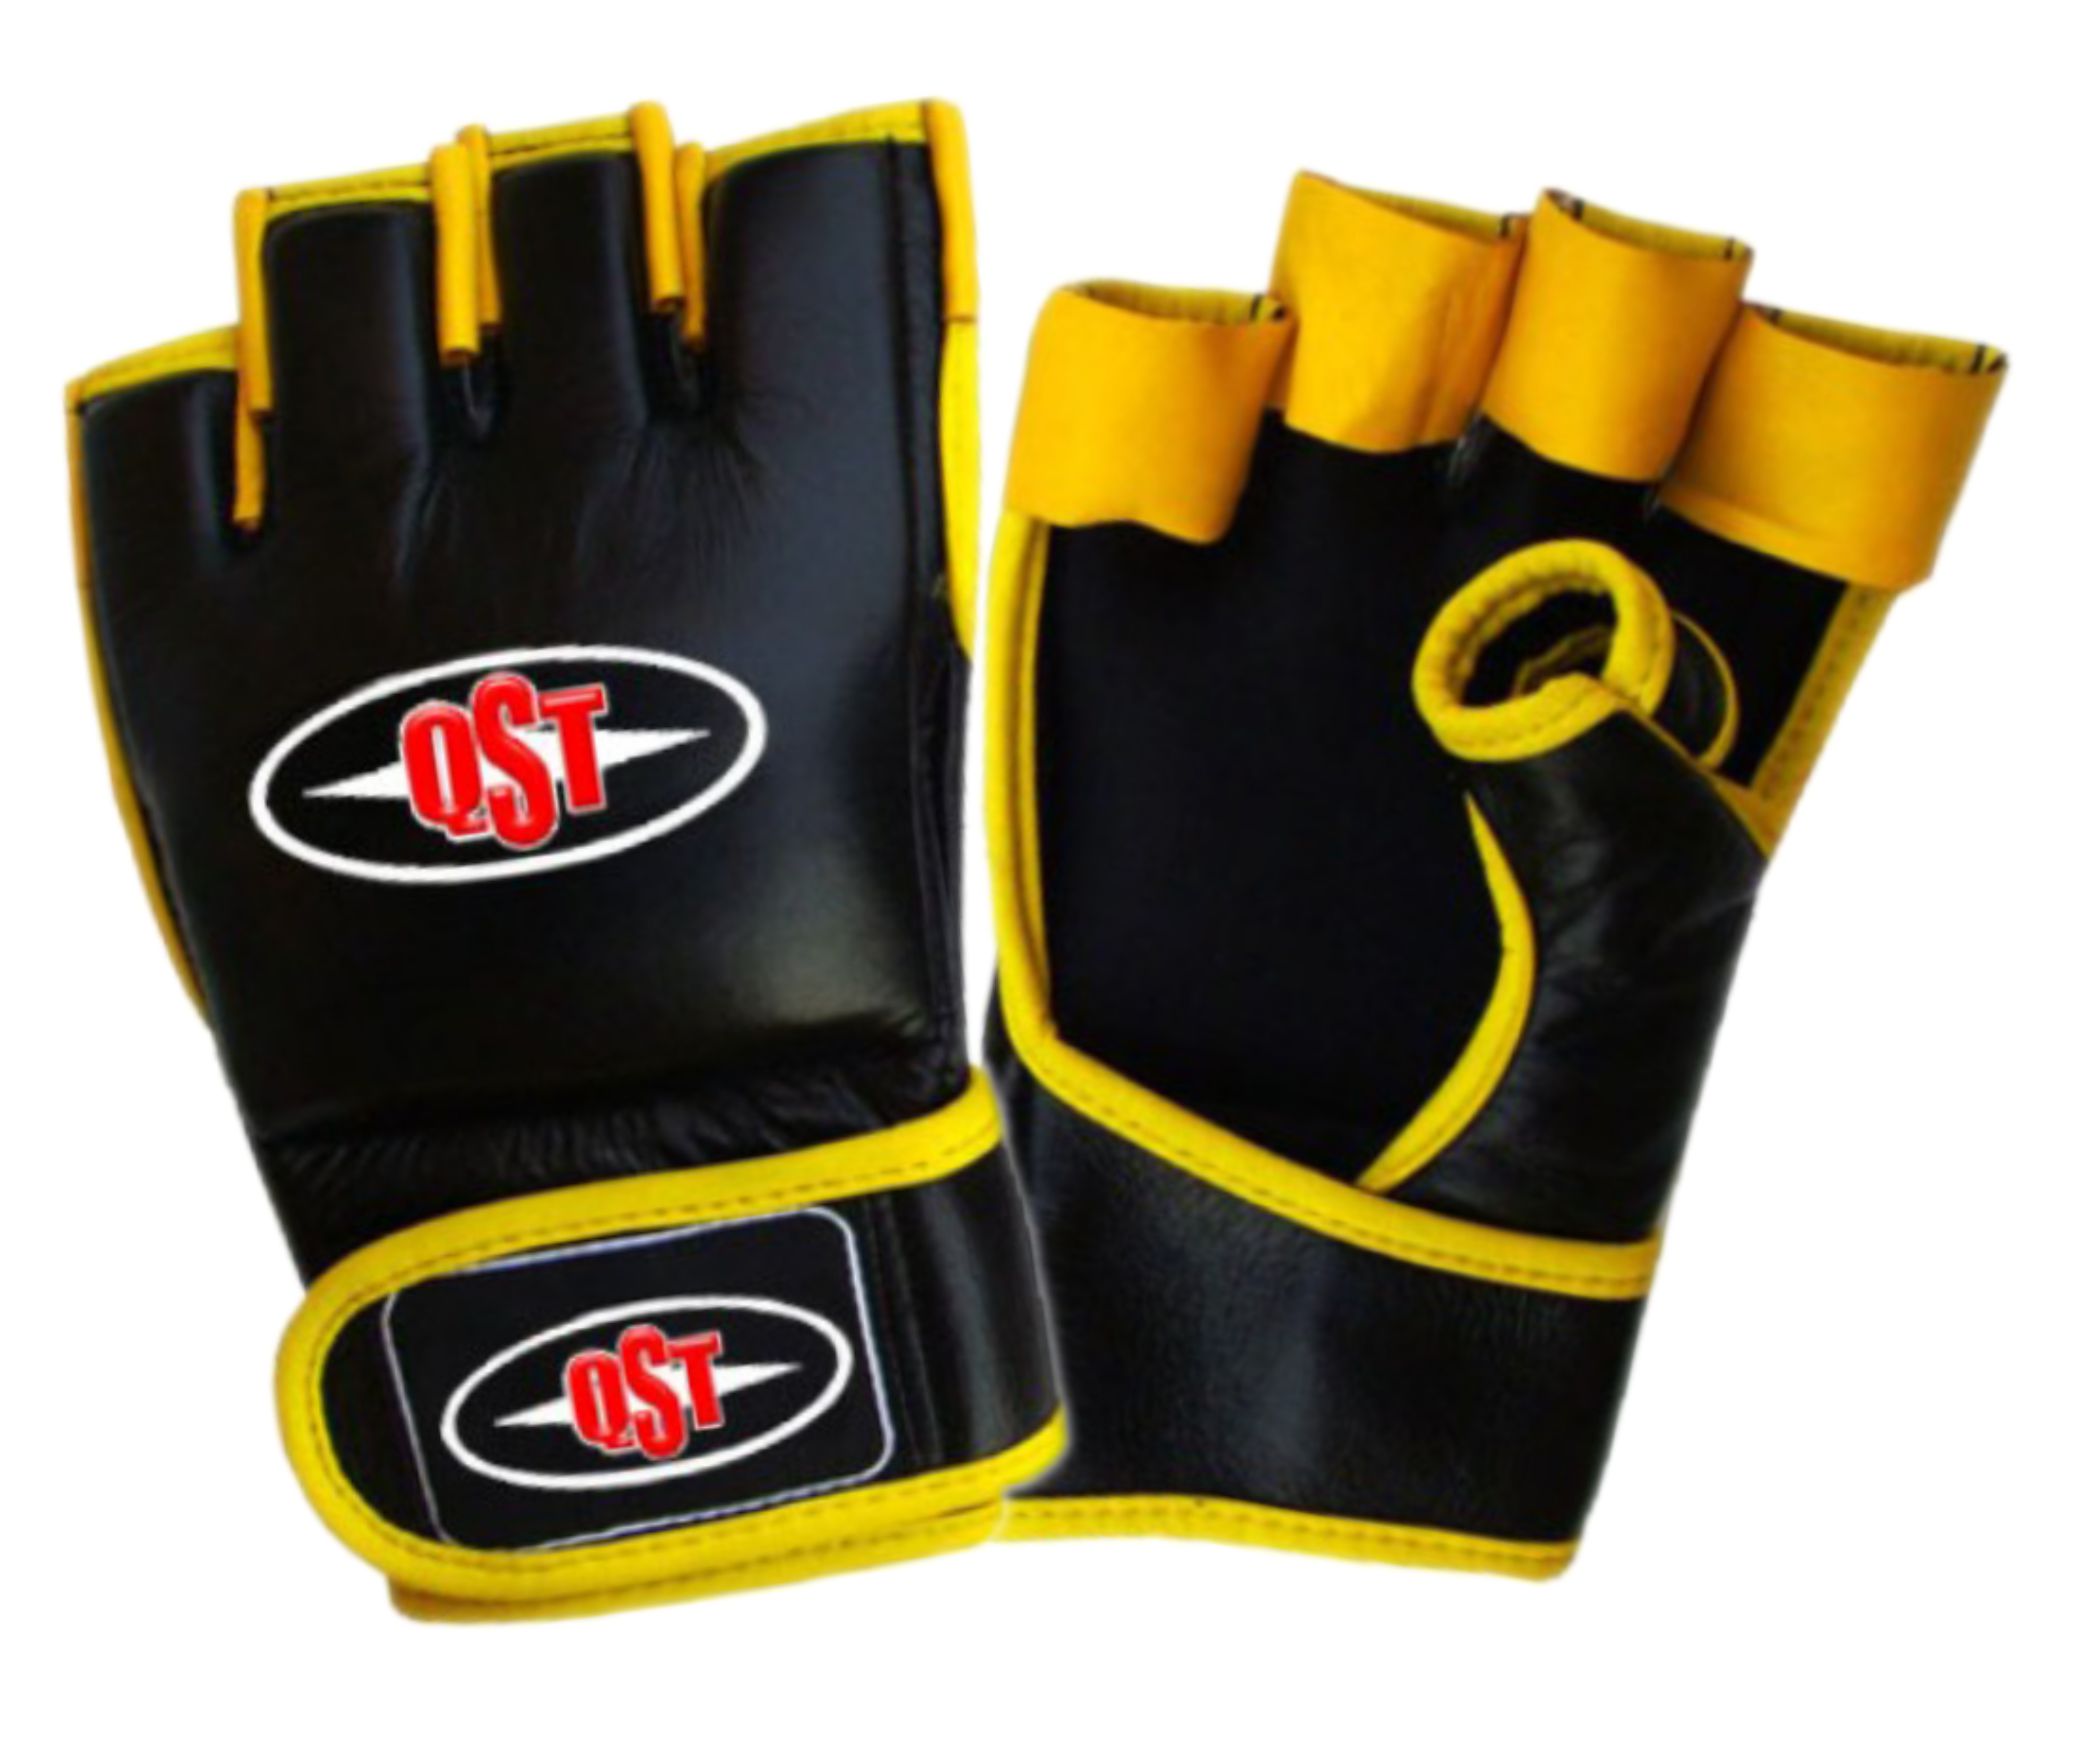 MMA Gloves - MMA-1344